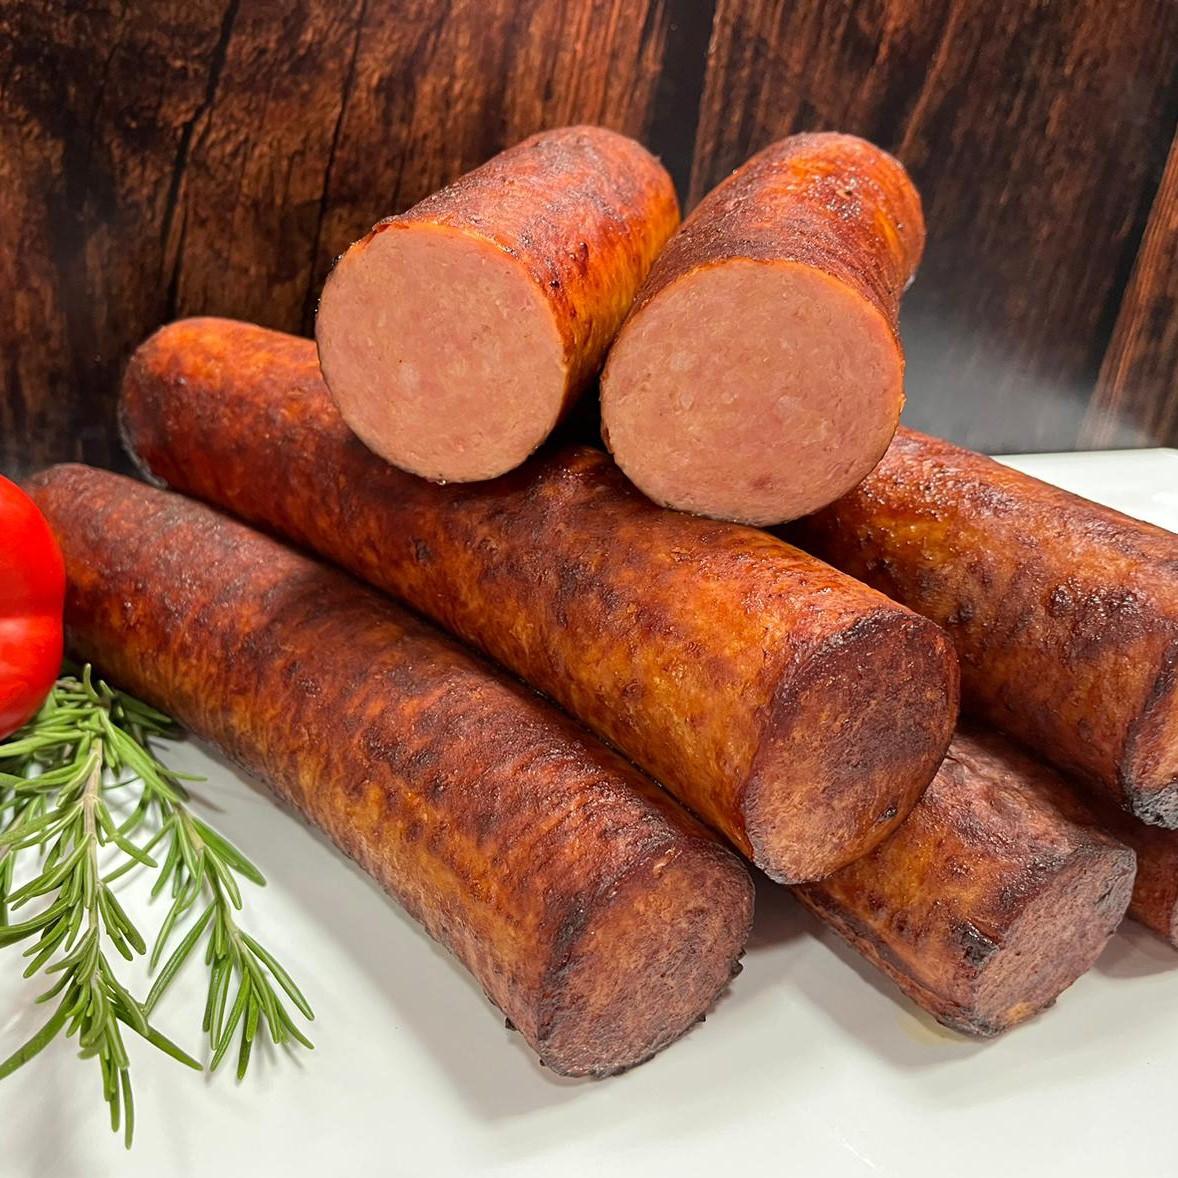 grillworst is best verkochte vleeswaar van de slager 500x500